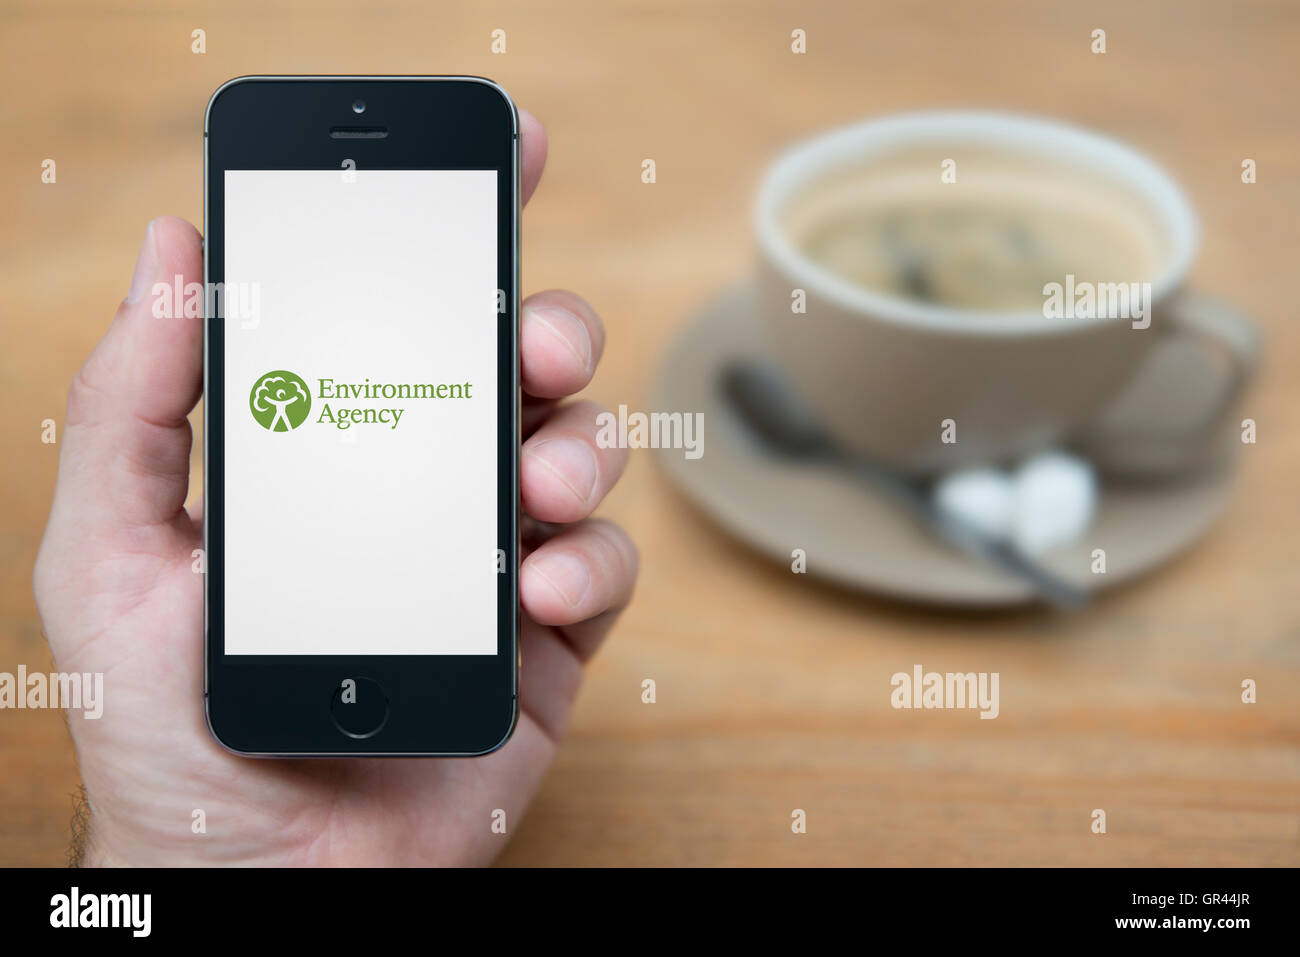 Un uomo guarda al suo iPhone che consente di visualizzare l'Agenzia per l'ambiente (logo solo uso editoriale). Foto Stock